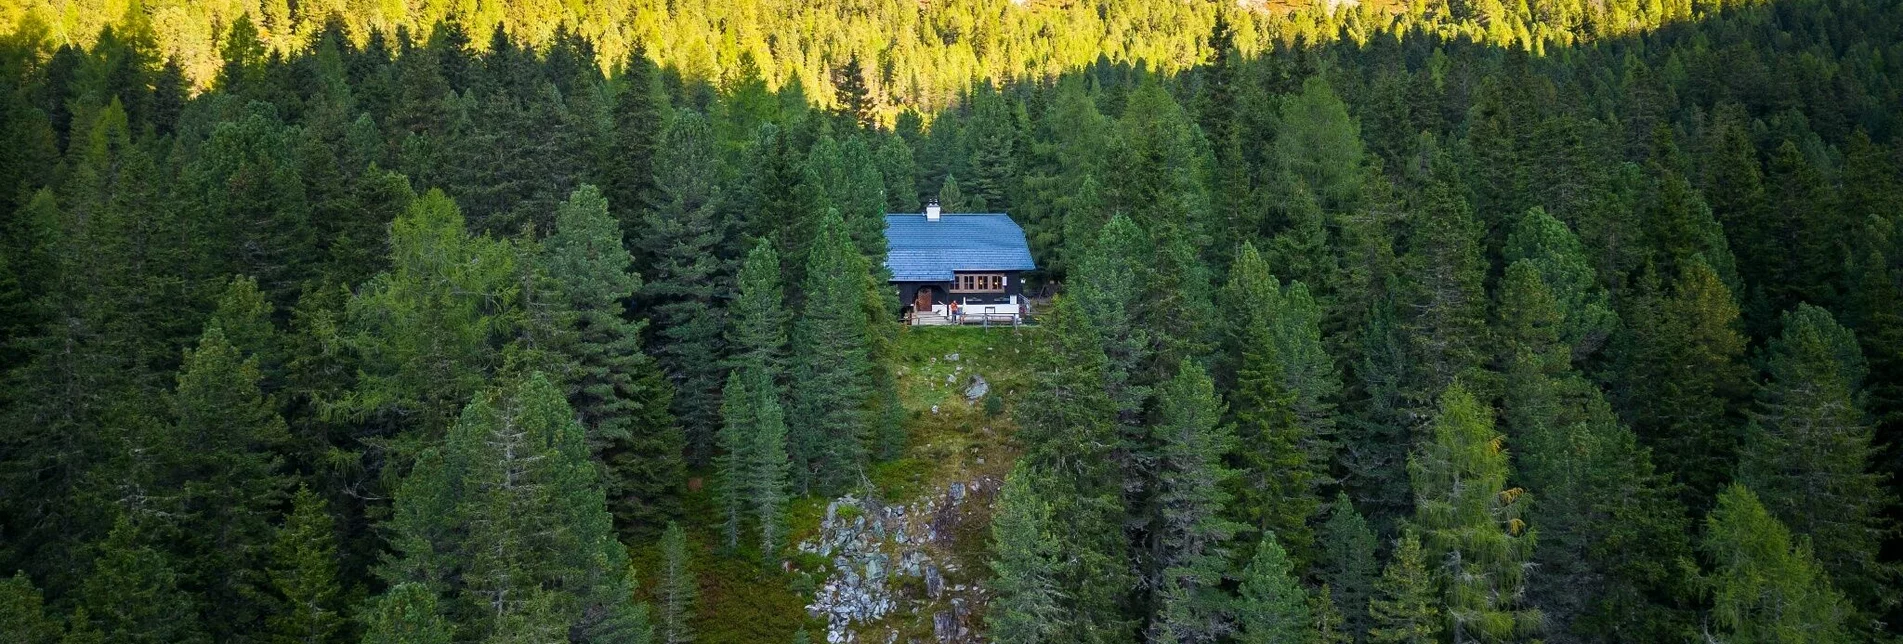 Wanderung Rudolf Schober Hütte - St. Nikolai | Höhenweg 702: Etappe 07 - Touren-Impression #1 | © Erlebnisregion Schladming-Dachstein